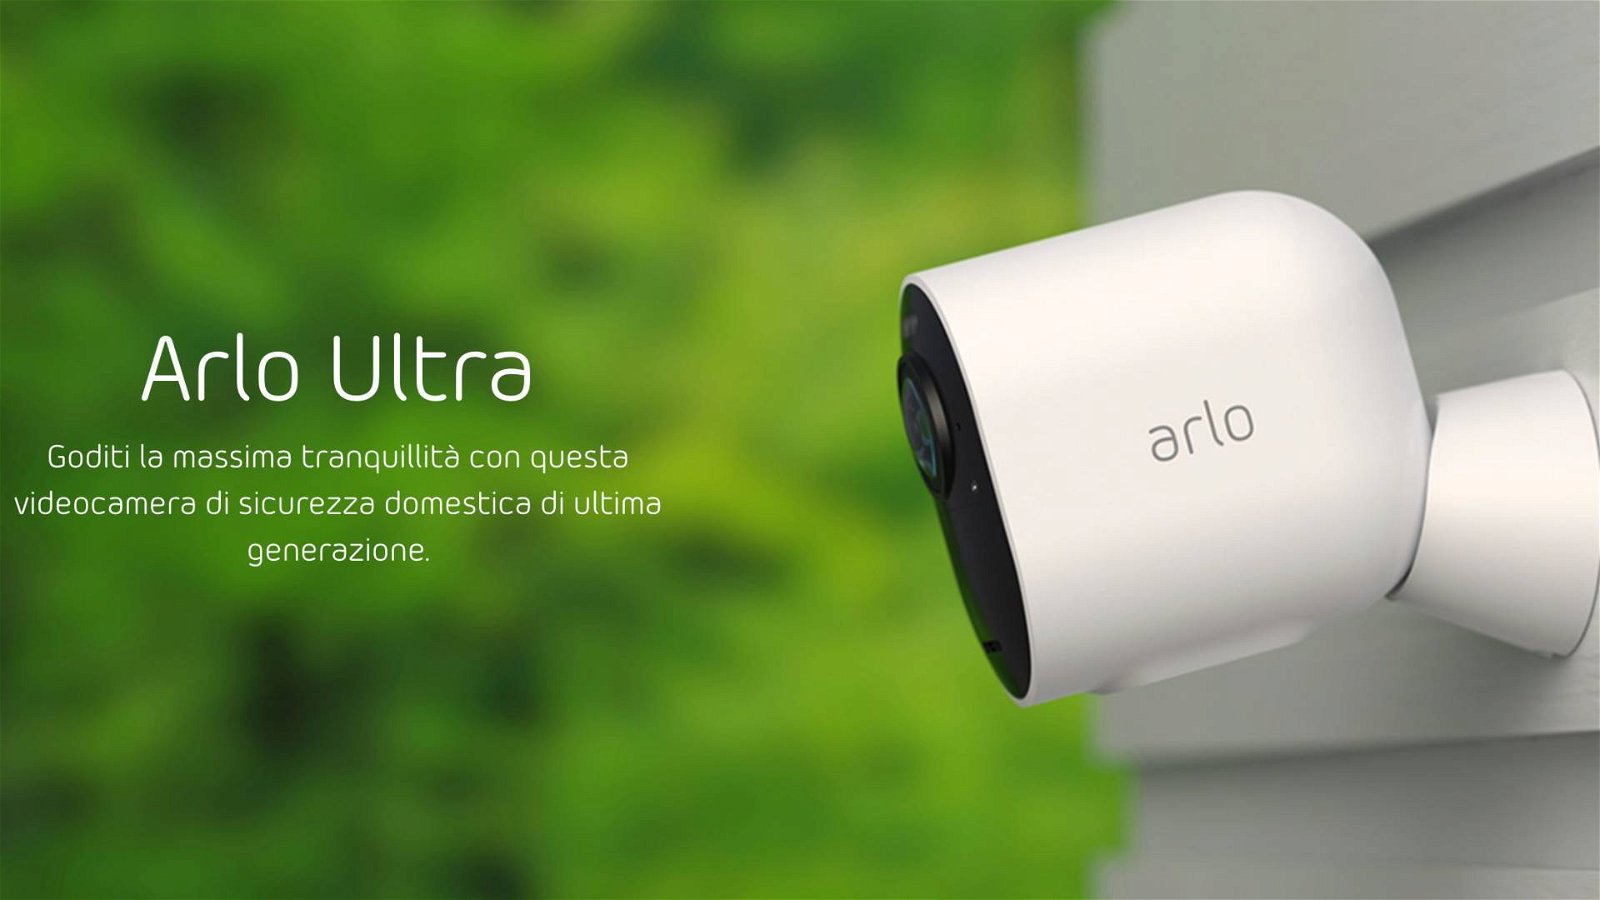 Immagine di Arlo Ultra, in Italia la videocamera di sicurezza 4K HDR wireless con autonomia di 6 mesi